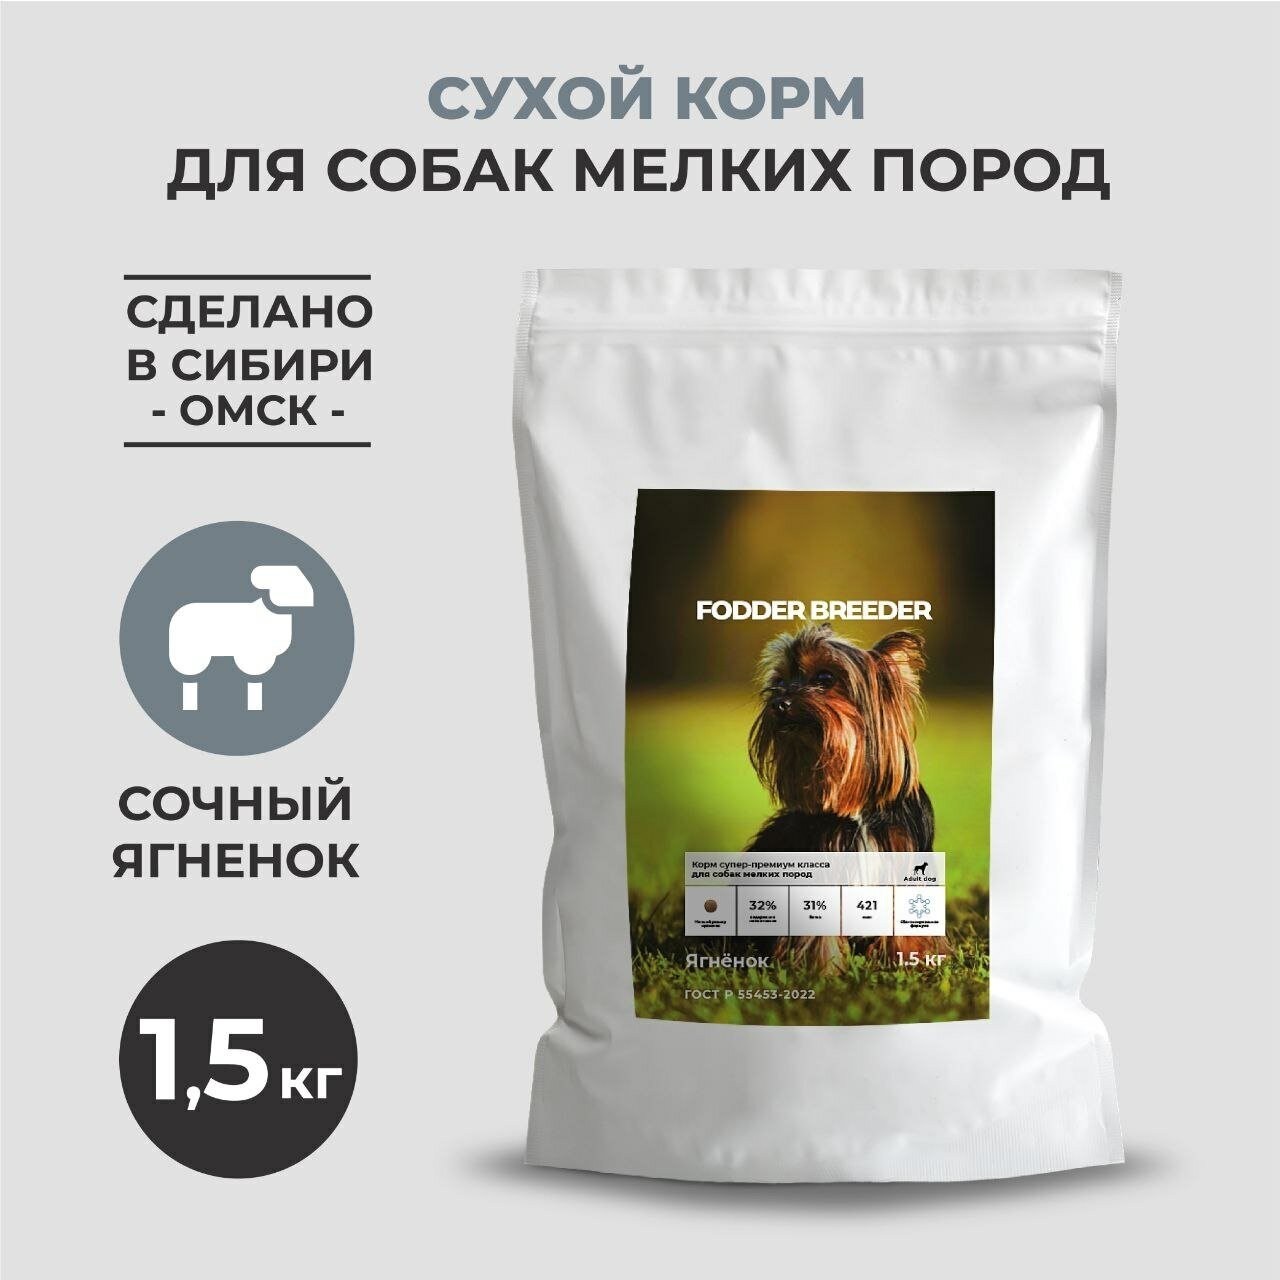 Сухой корм супер-премиум класса FODDER BREEDER для собак мелких пород с ягненком 1,5 кг